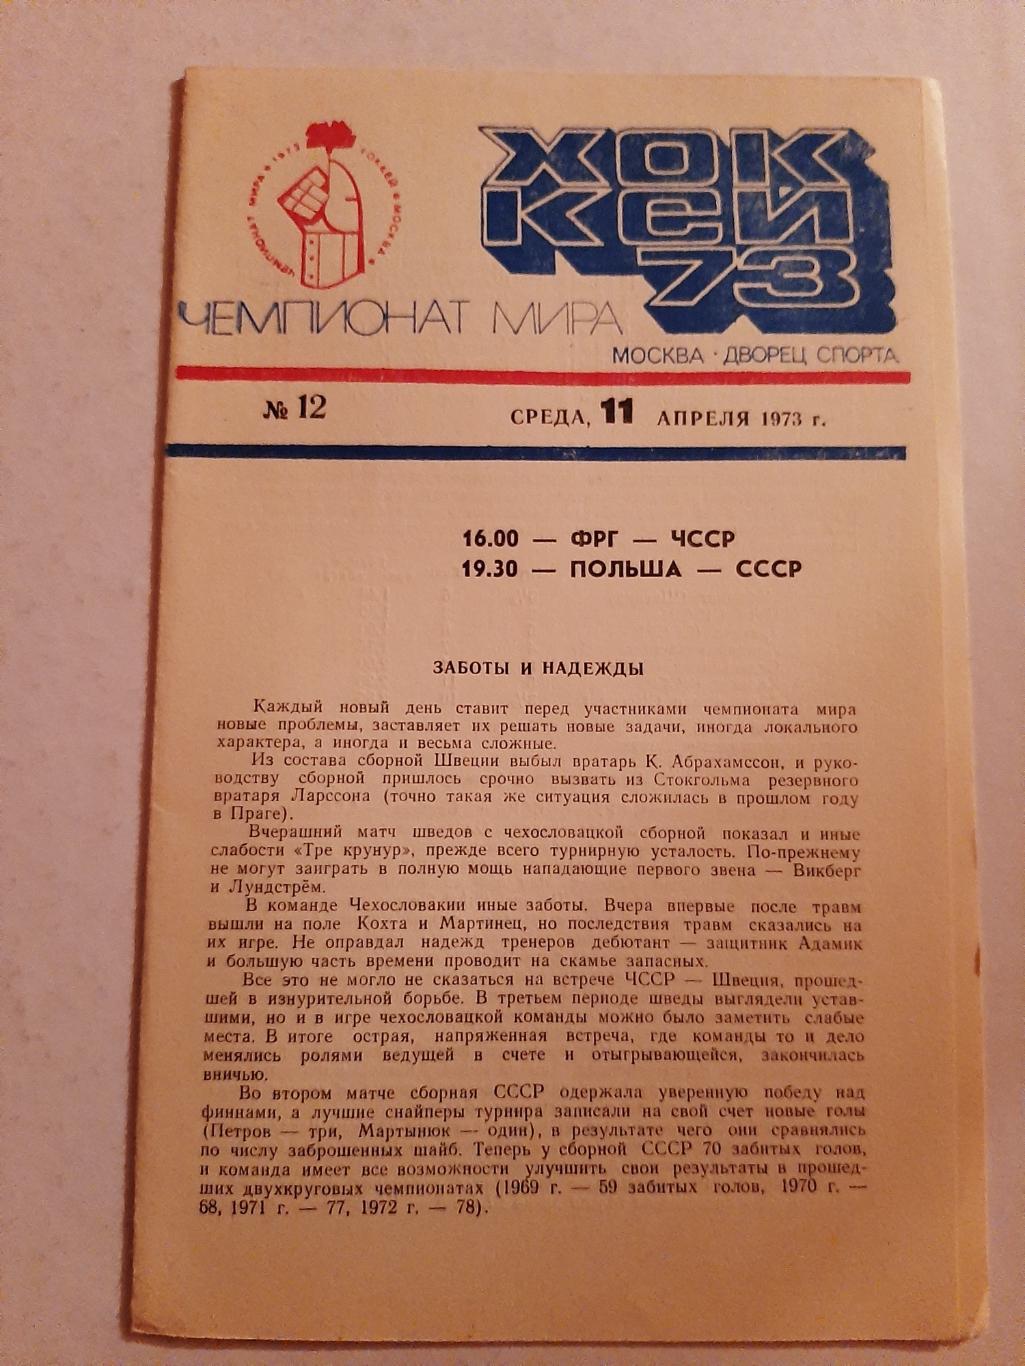 ФРГ - ЧССР, Польша - СССР 11.04.1973